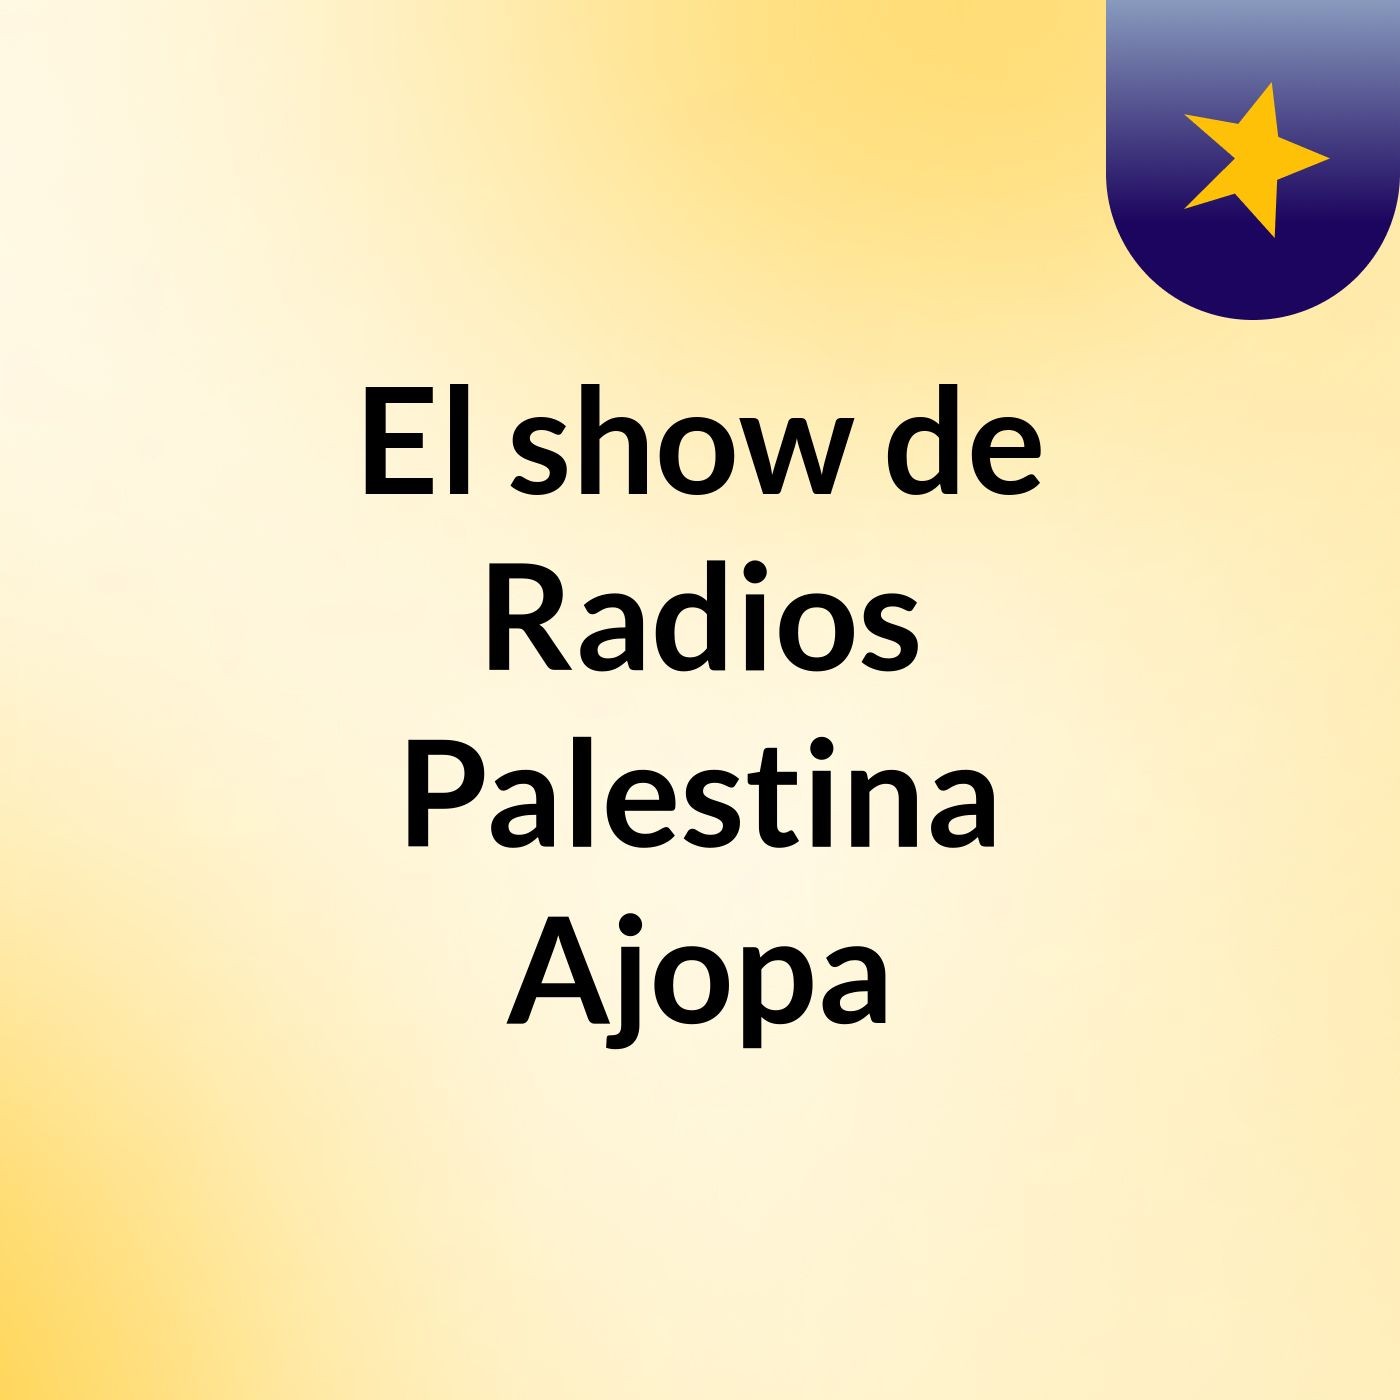 El show de Radios Palestina Ajopa